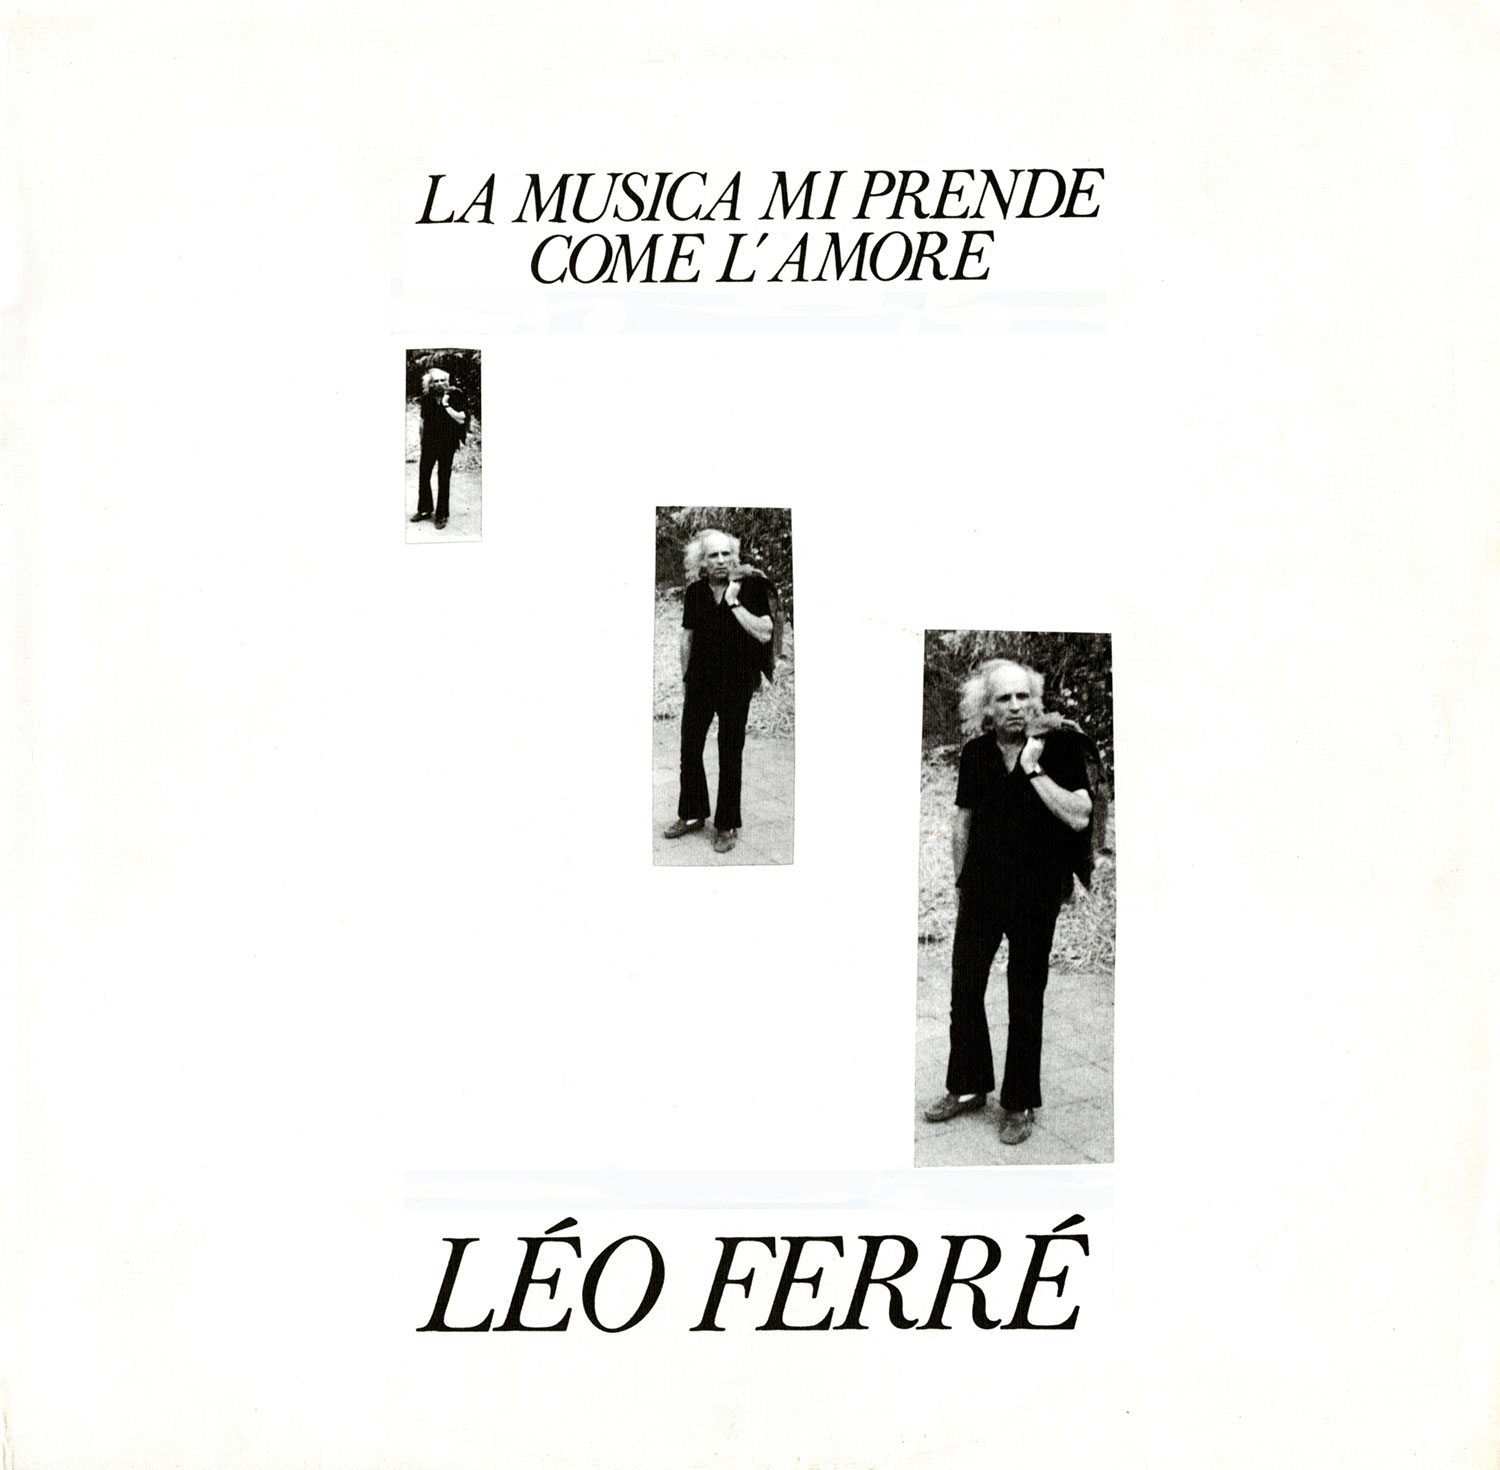 Léo Ferré, il cantore dell'iomaginario